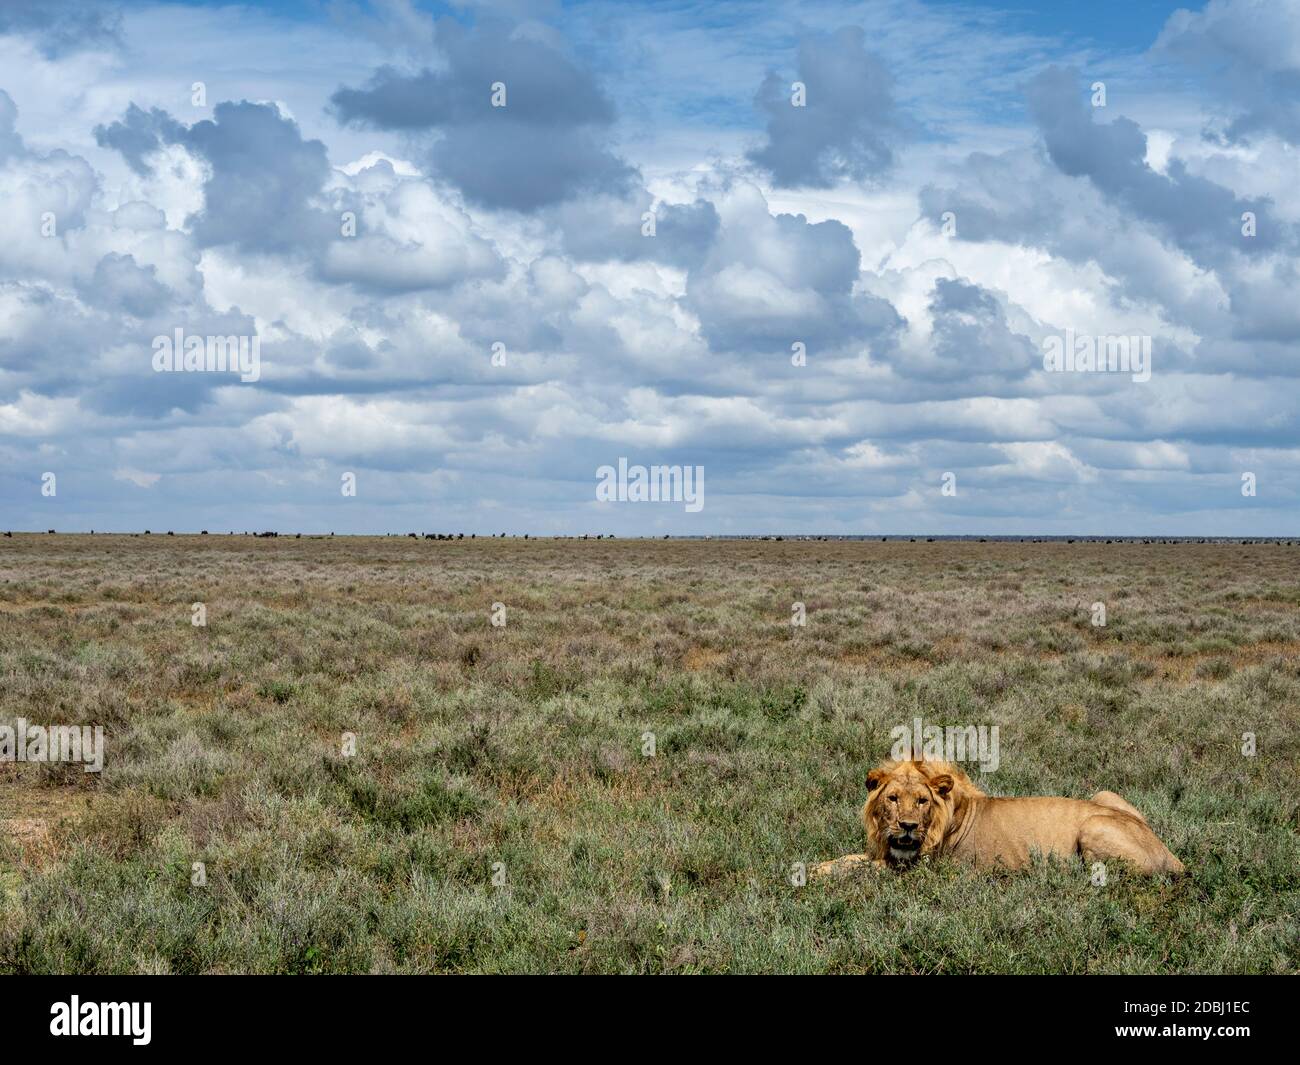 Un lion mâle adulte (Panthera leo), Parc national du Serengeti, site du patrimoine mondial de l'UNESCO, Tanzanie, Afrique de l'est, Afrique Banque D'Images